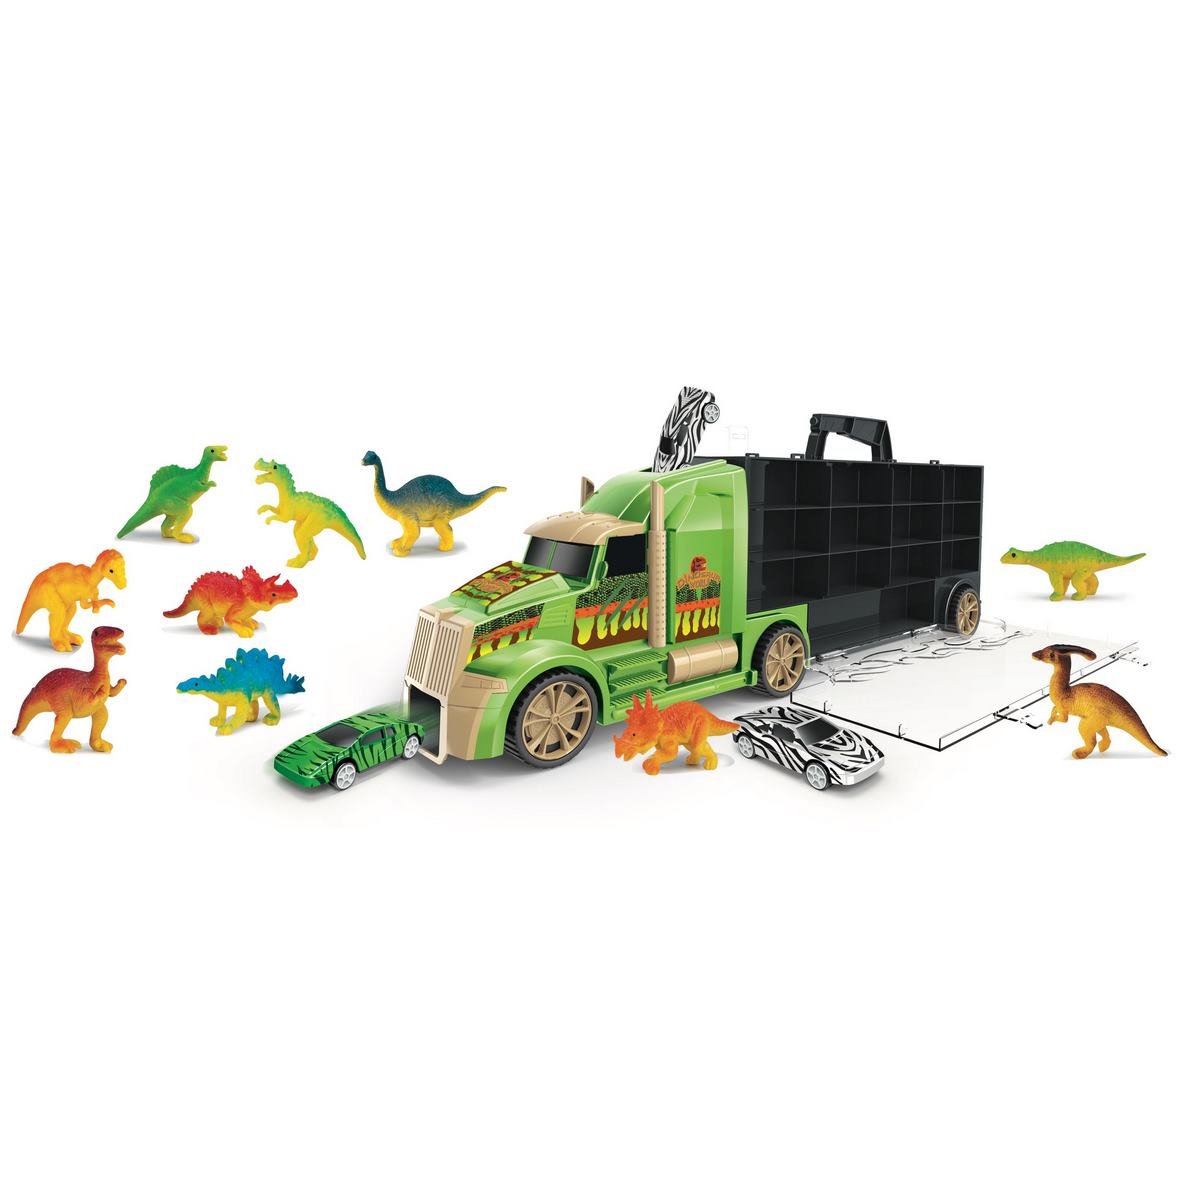 Mon camion de dinosaures, jouets 1er age